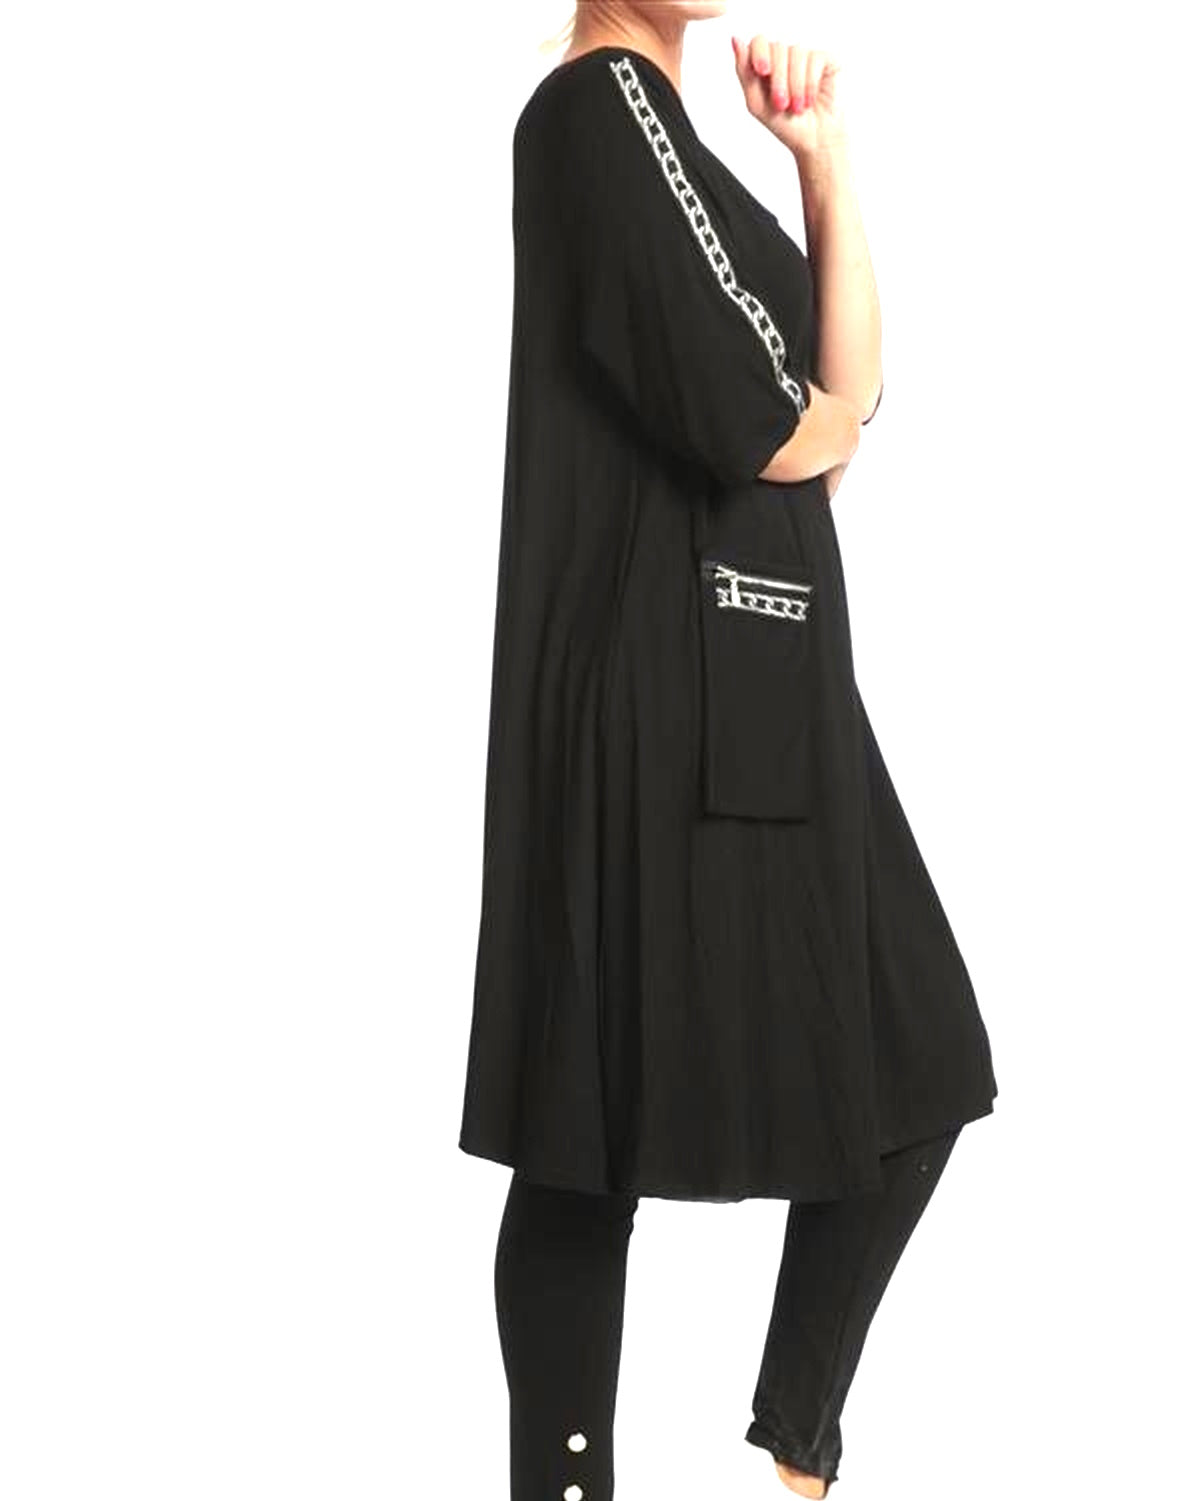 NAVEED Mode - Kleid Tunika - 2 Ausführungen - Silber Applikationen